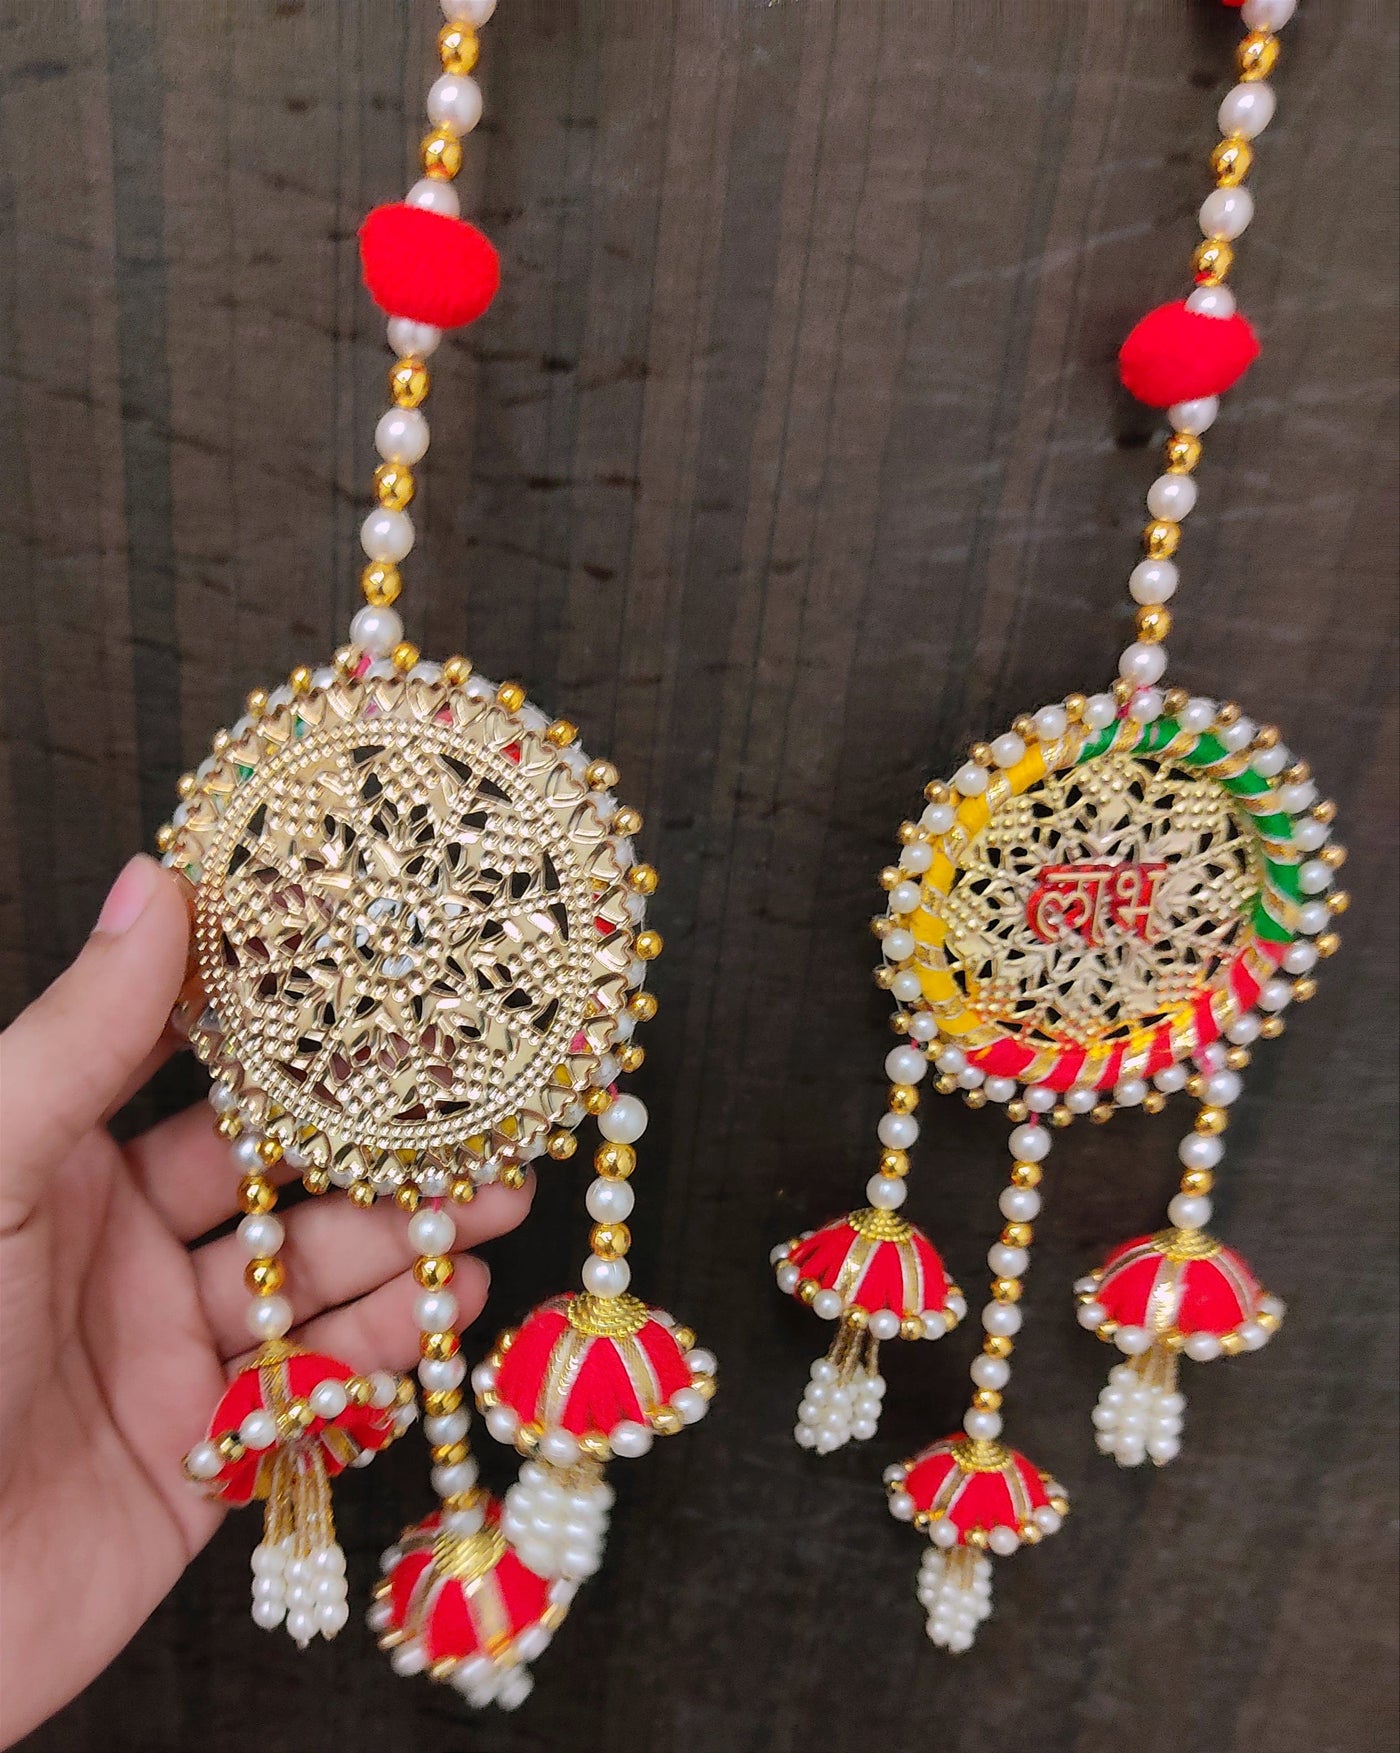 Lamansh shubh labh LAMANSH Decorative Shubh Labh Hangings for Navratri & Diwali Decor | Hangings for door entrance in festivals